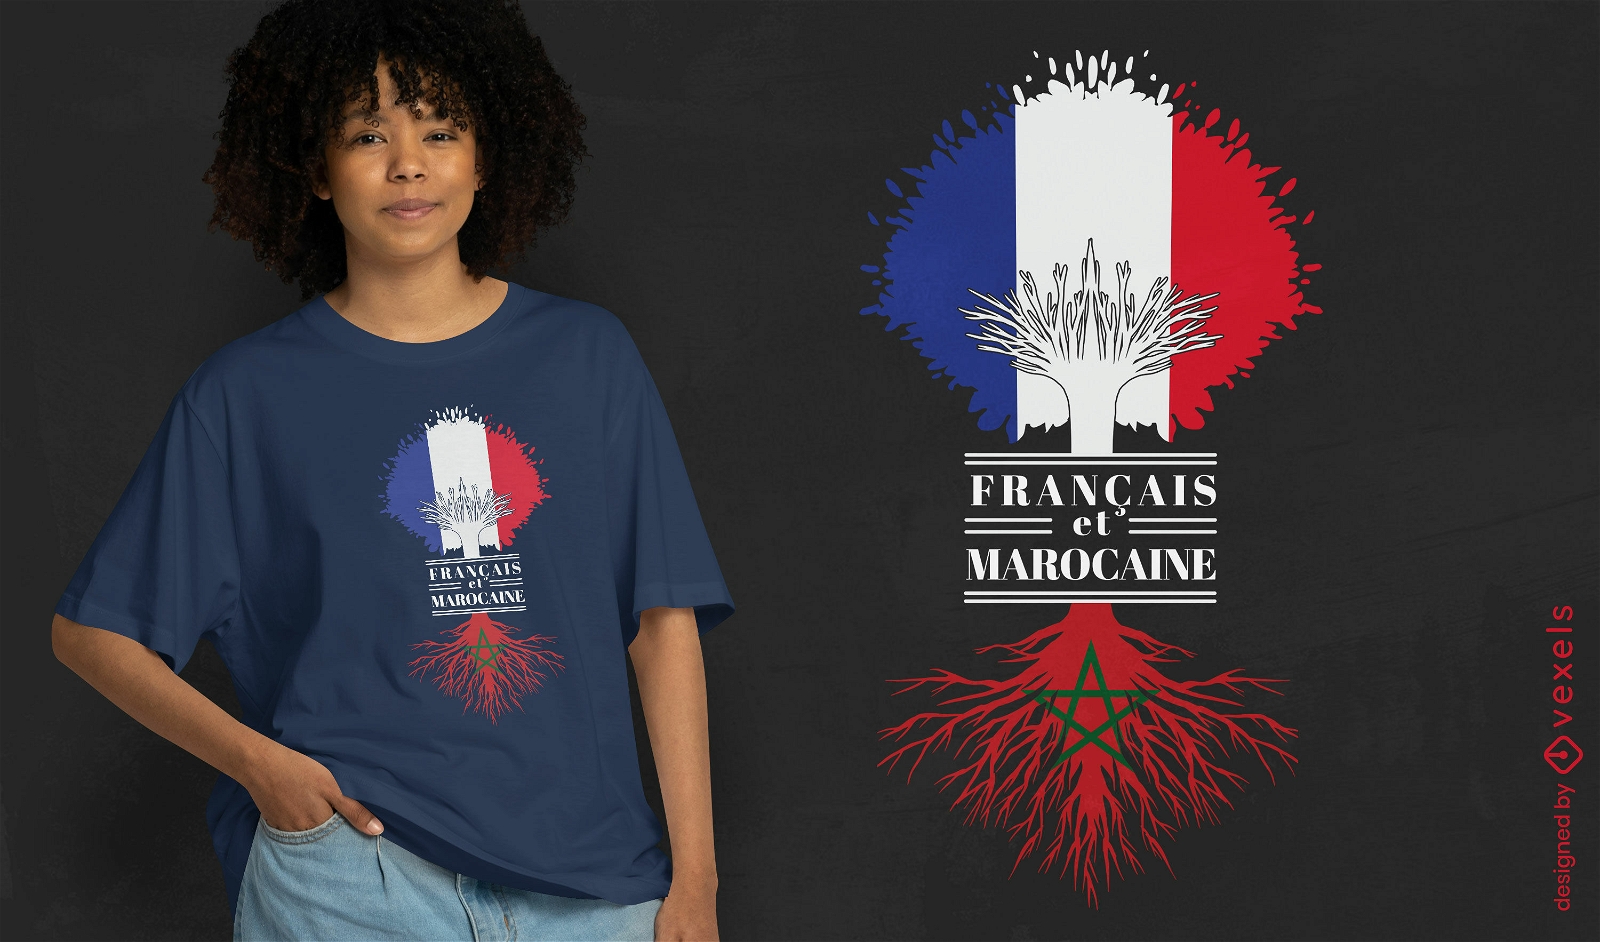 Franz?sisches und marokkanisches T-Shirt-Design